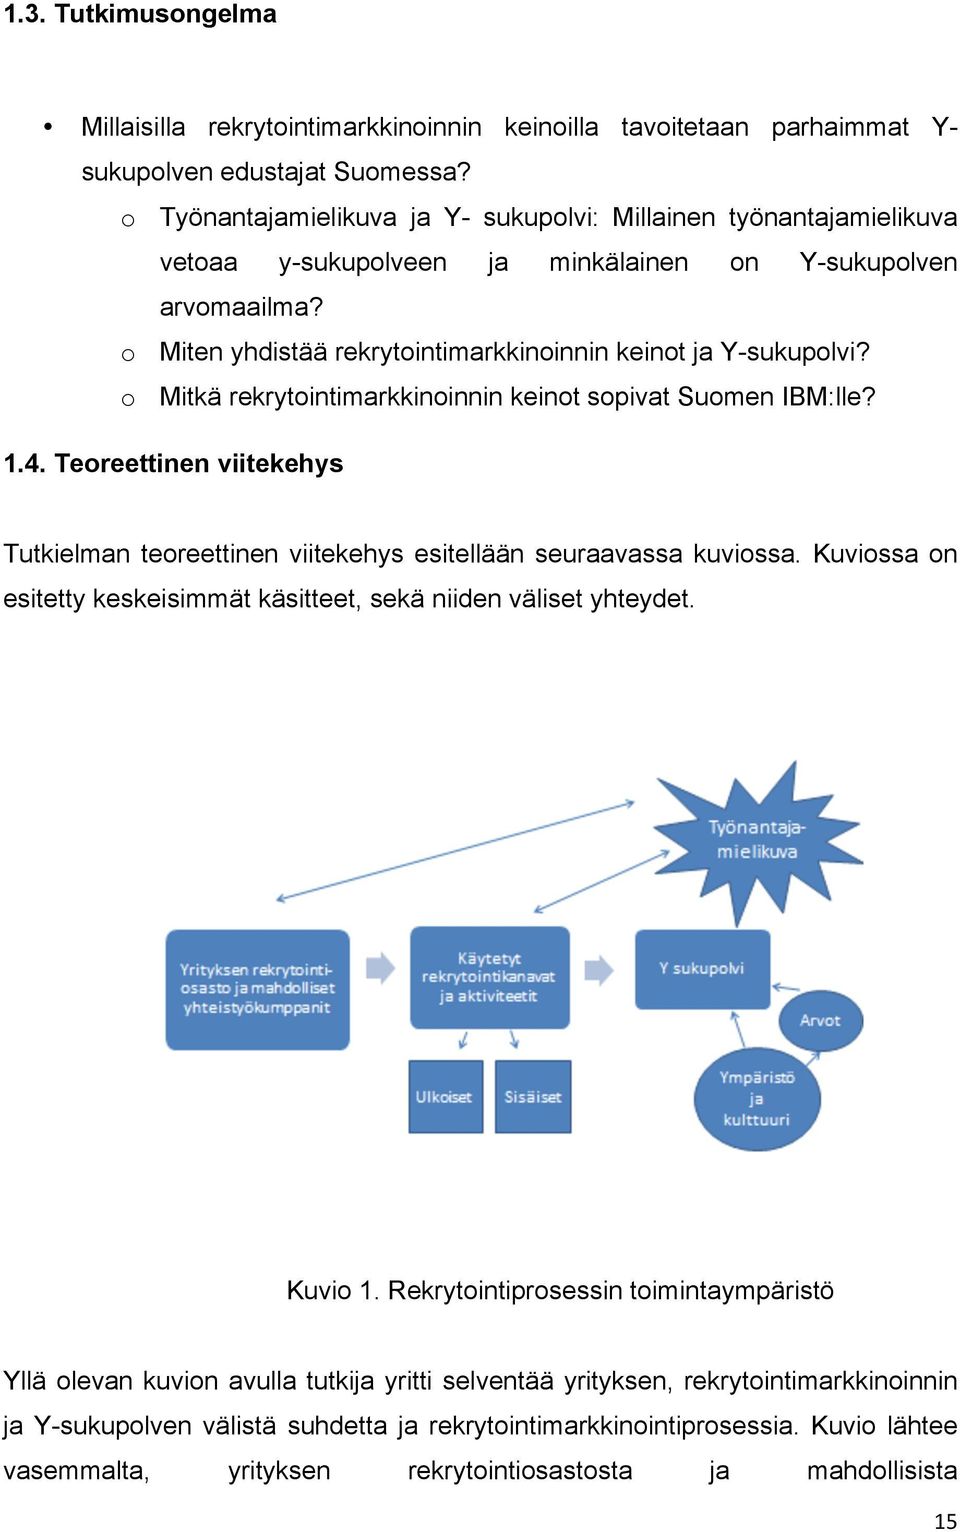 o Mitkä rekrytointimarkkinoinnin keinot sopivat Suomen IBM:lle? 1.4. Teoreettinen viitekehys Tutkielman teoreettinen viitekehys esitellään seuraavassa kuviossa.